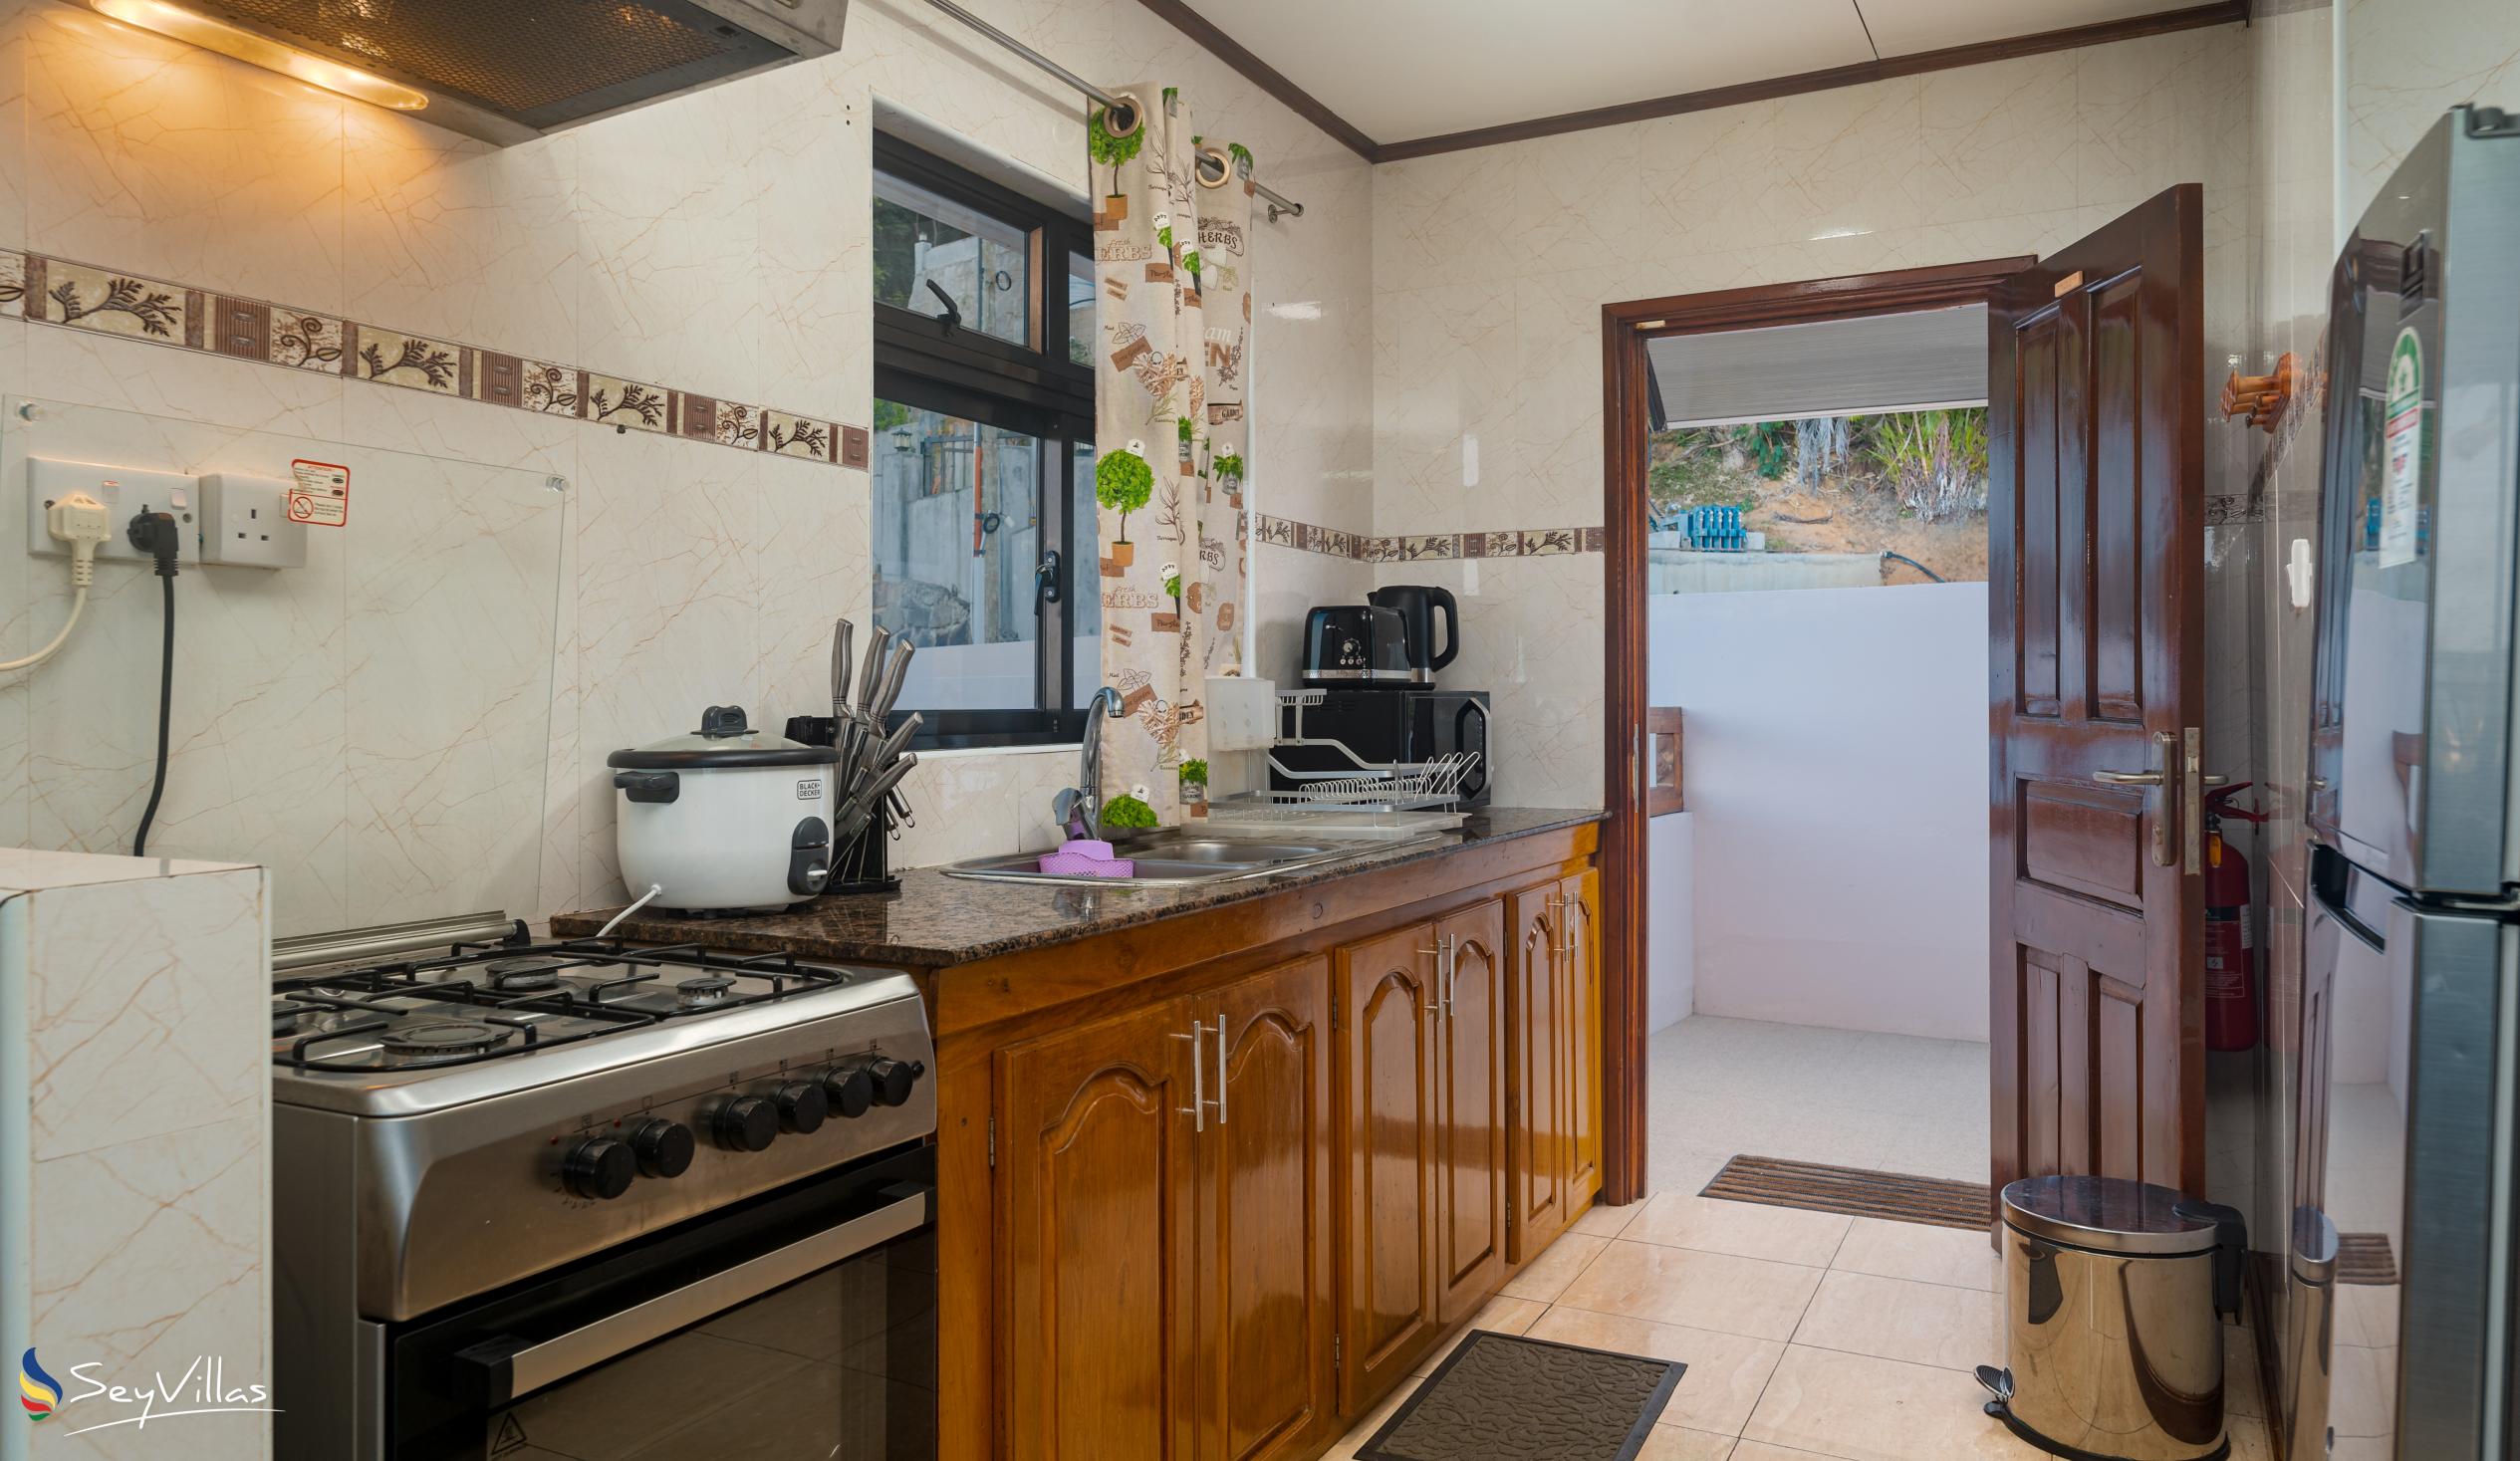 Foto 37: Maison L'Horizon - Appartamento con 2 camere Soley - Mahé (Seychelles)